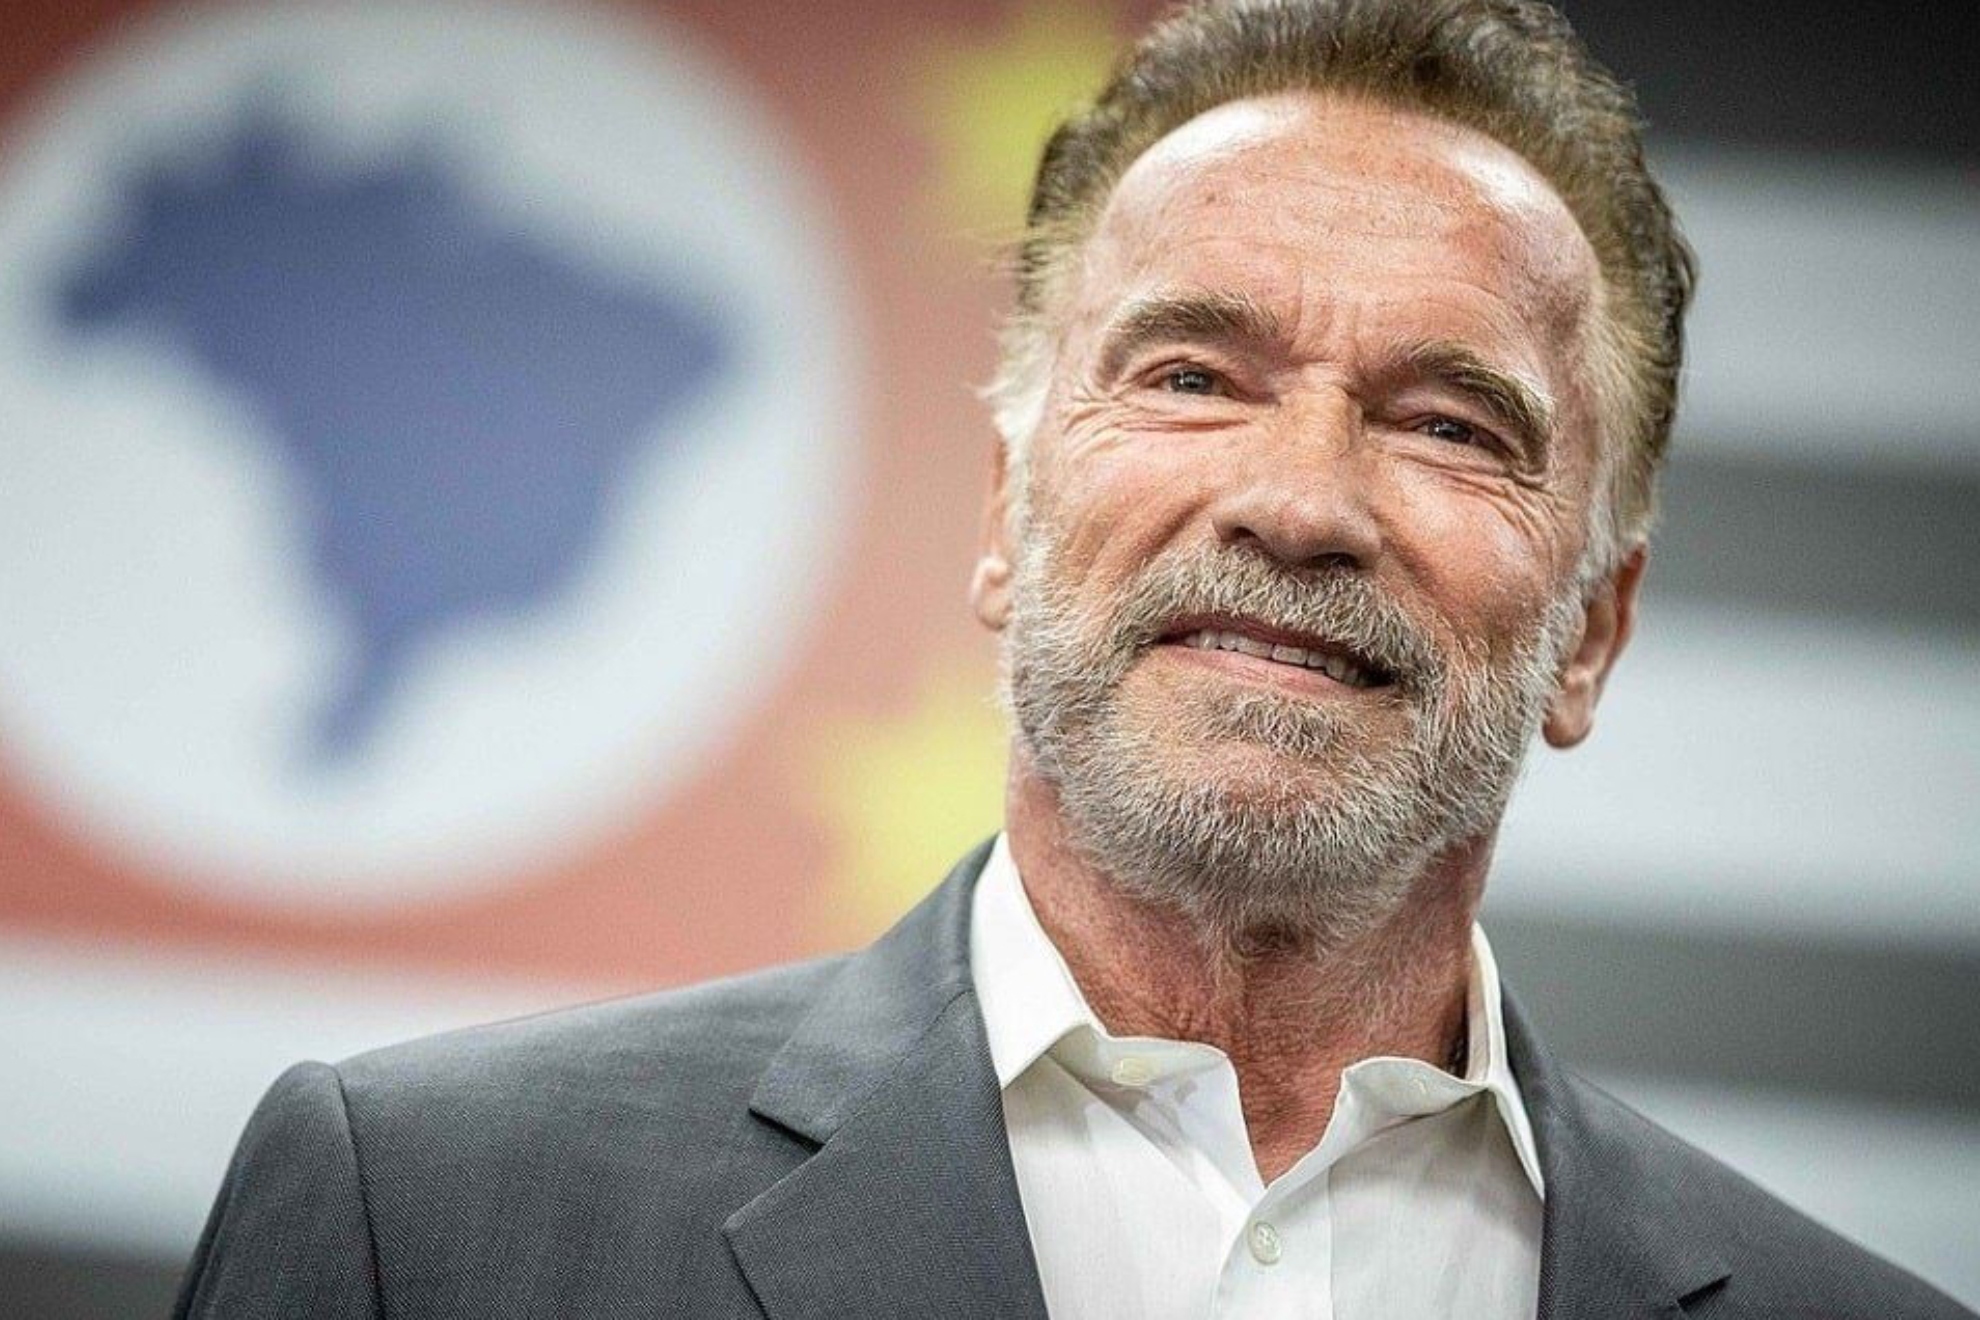 Schwarzenegger lucha contra su pasado nazi: "Mi padre y muchos otros hombres fueron absorbidos por un sistema de odio...".